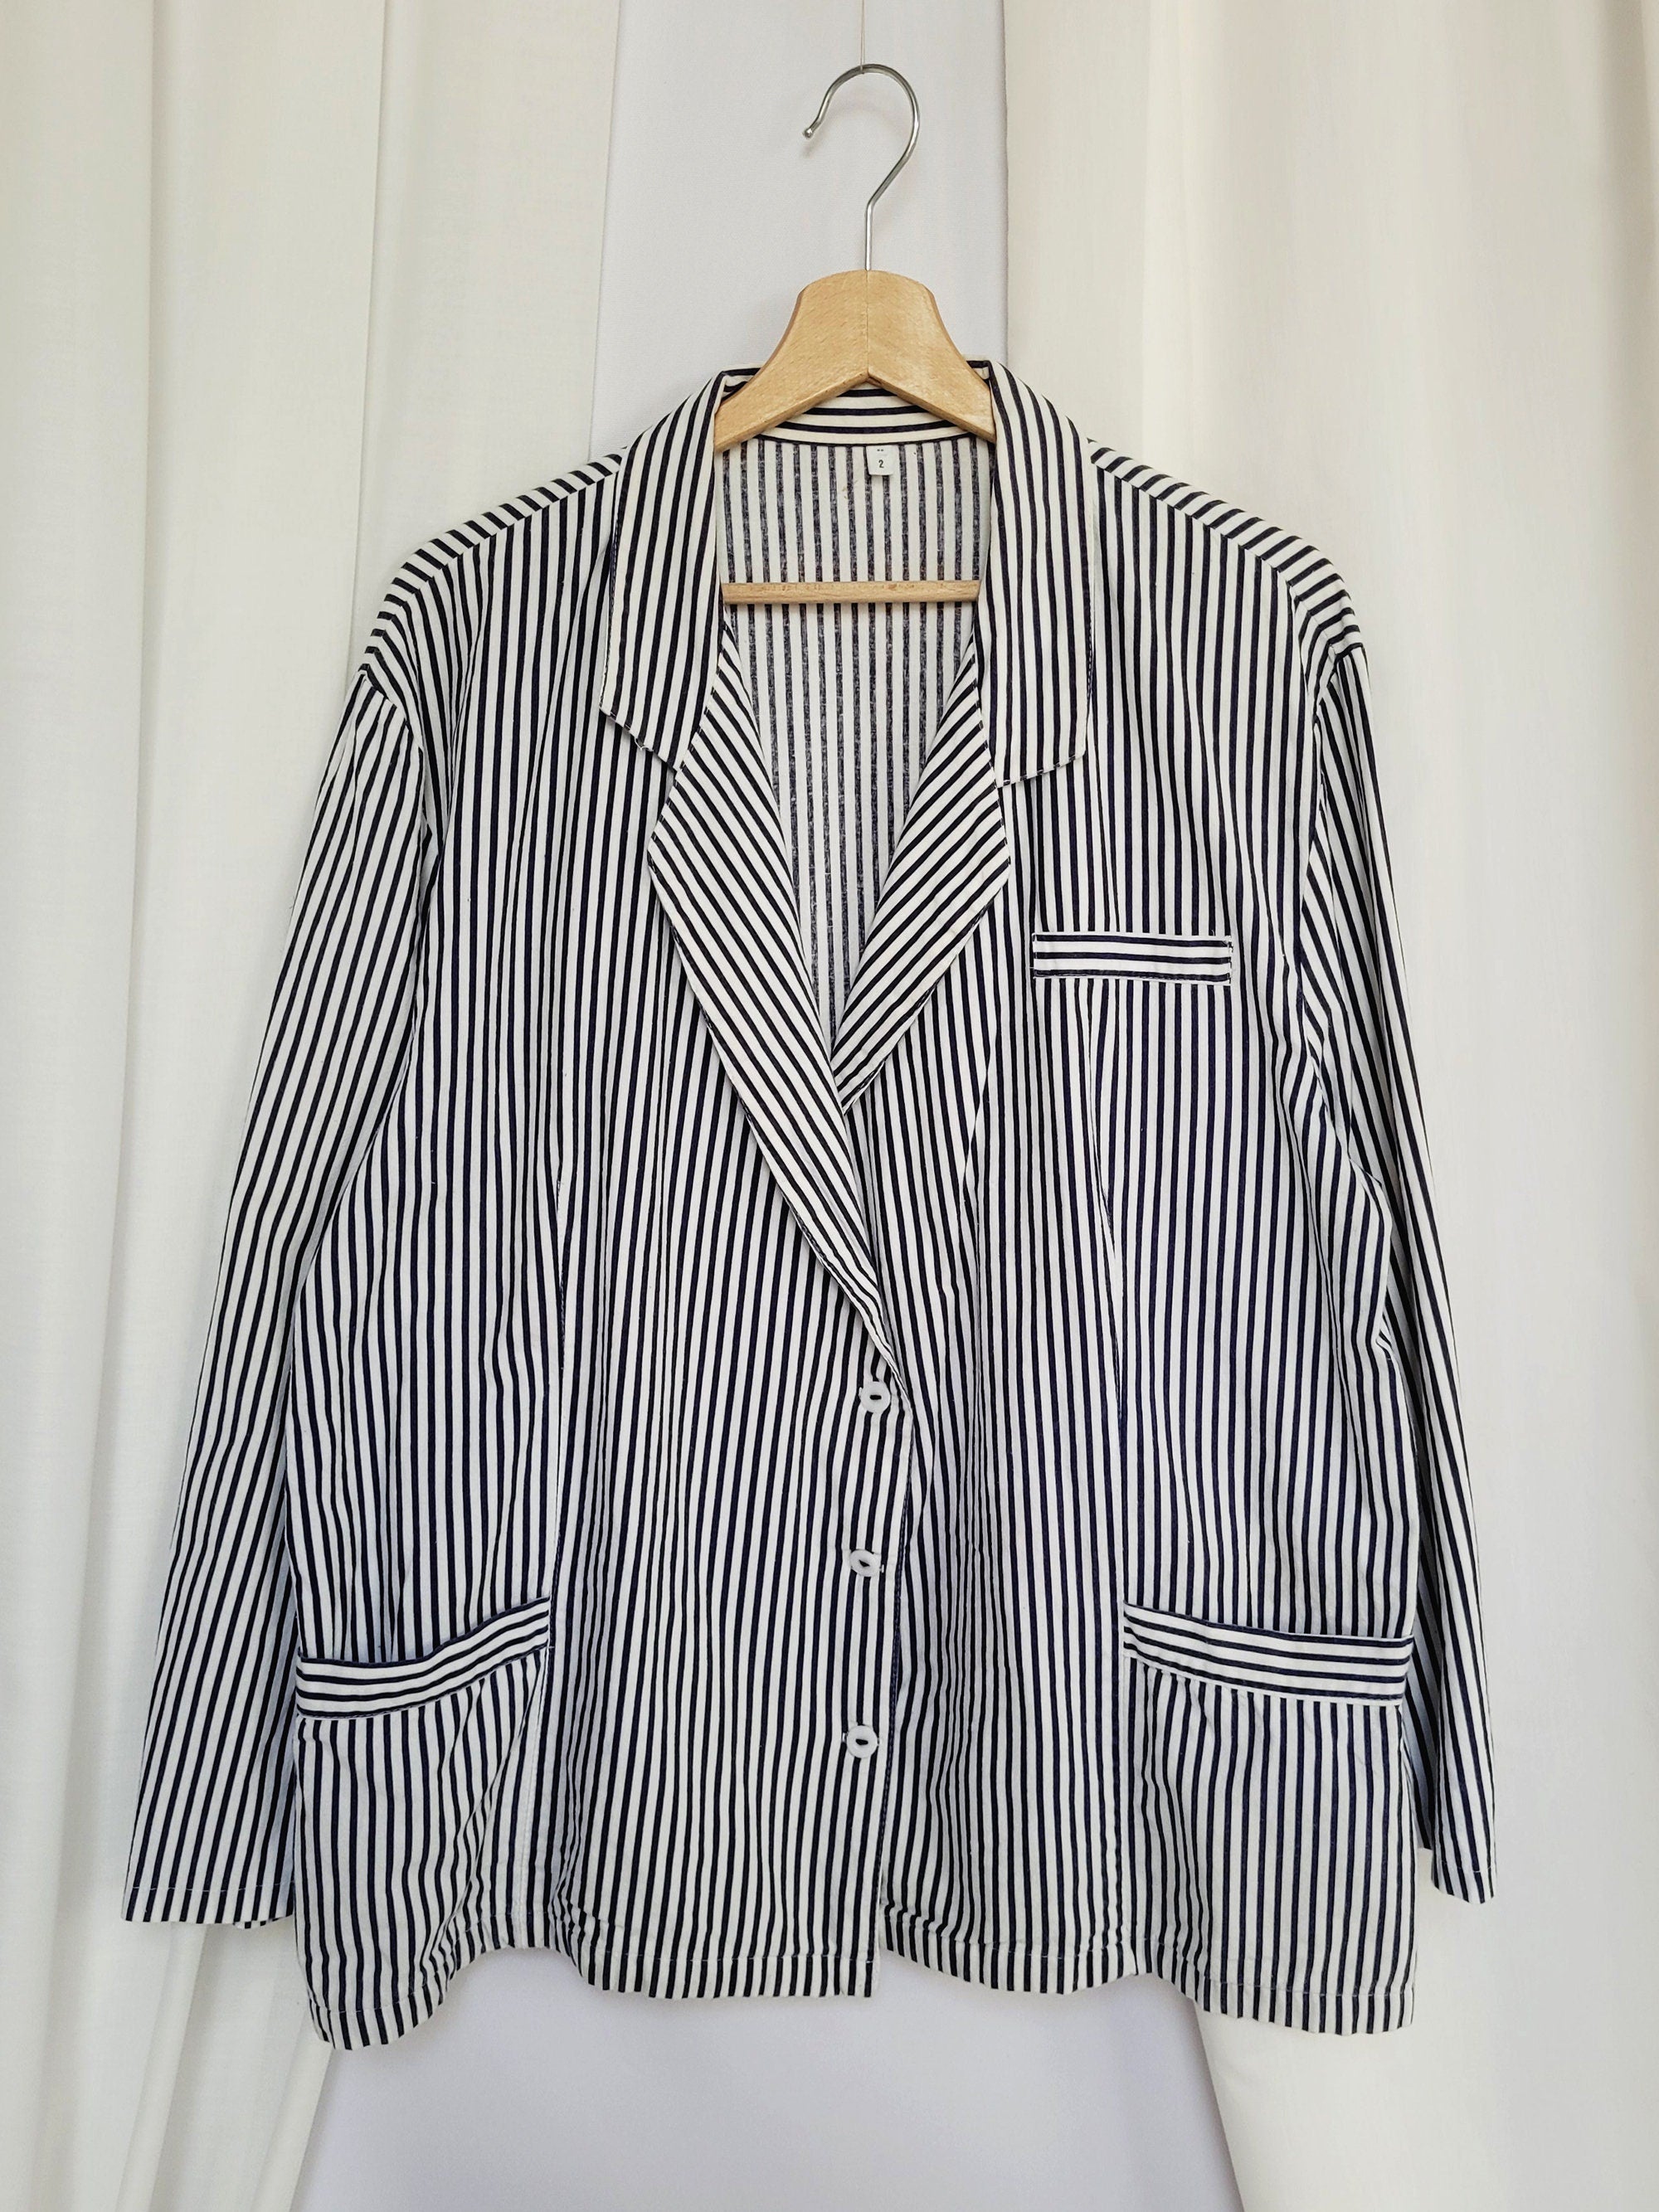 90s retro minimalist blue striped oversized blazer jacket